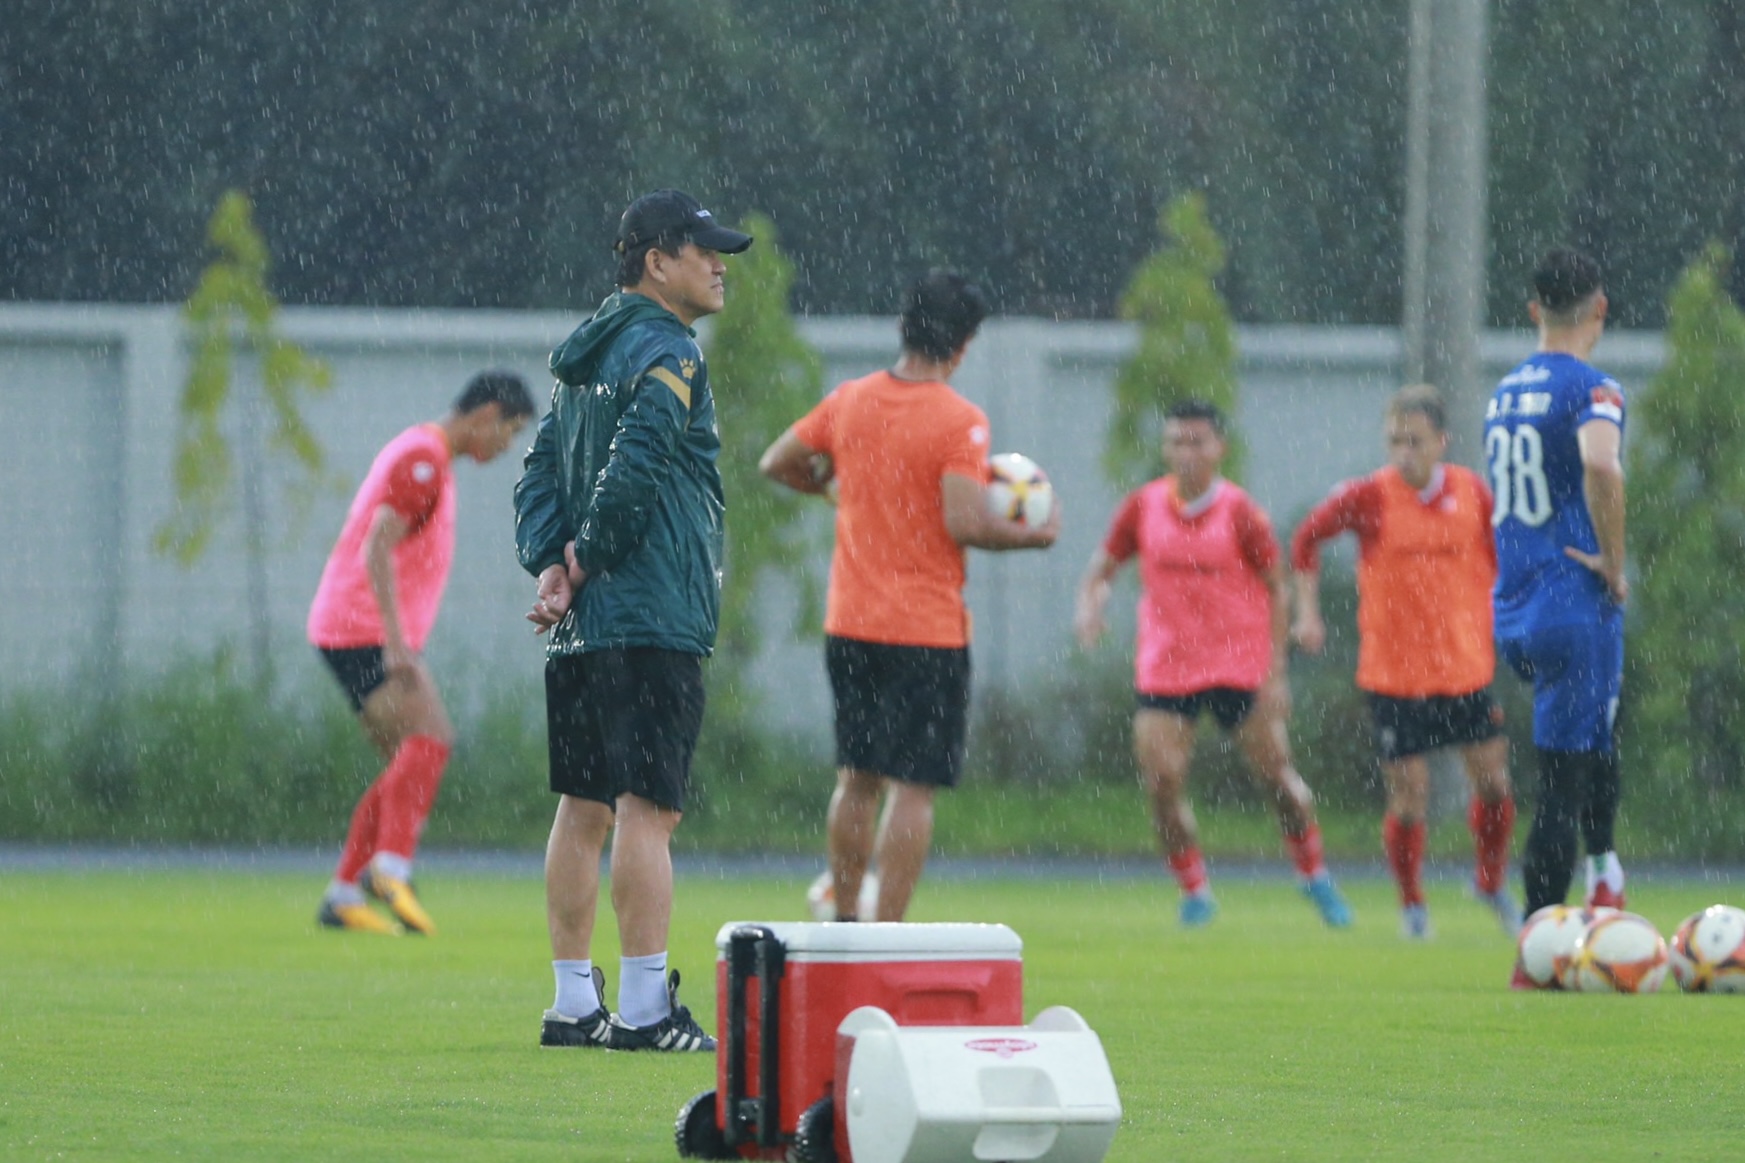 Dù trời mưa lớn nhưng huấn luyện viên Vũ Tiến Thành vẫn yêu cầu các học trò duy trì tập luyện. Theo ông Thành, đây là điều kiện để các cầu thủ quen nhịp độ vận động dưới thời tiết này khi cả nước đang bước vào mùa mưa.